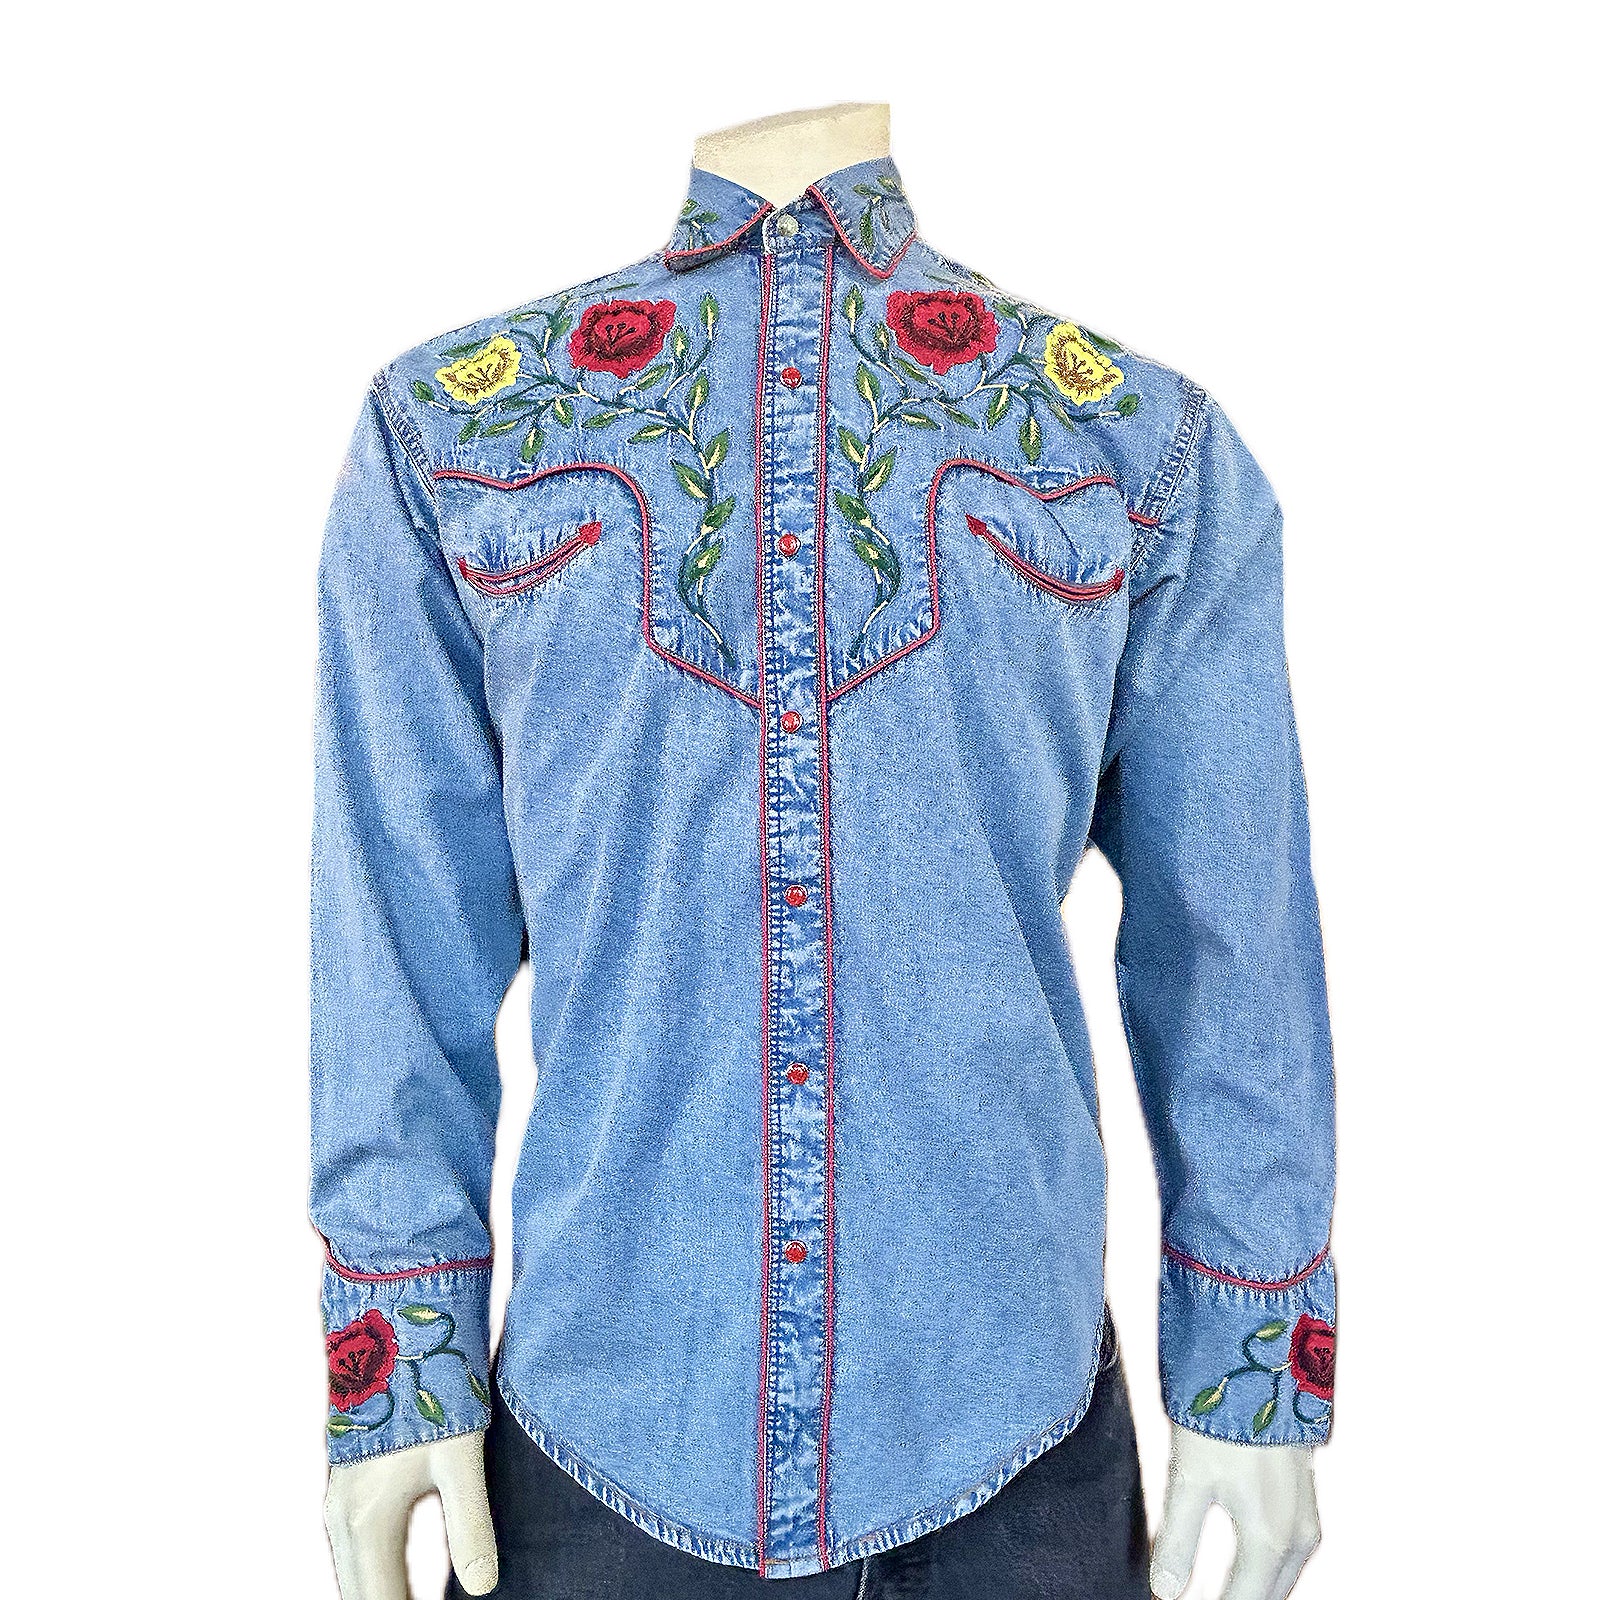 Rockmount Men's Floral Embroidered Vintage Denim Shirt